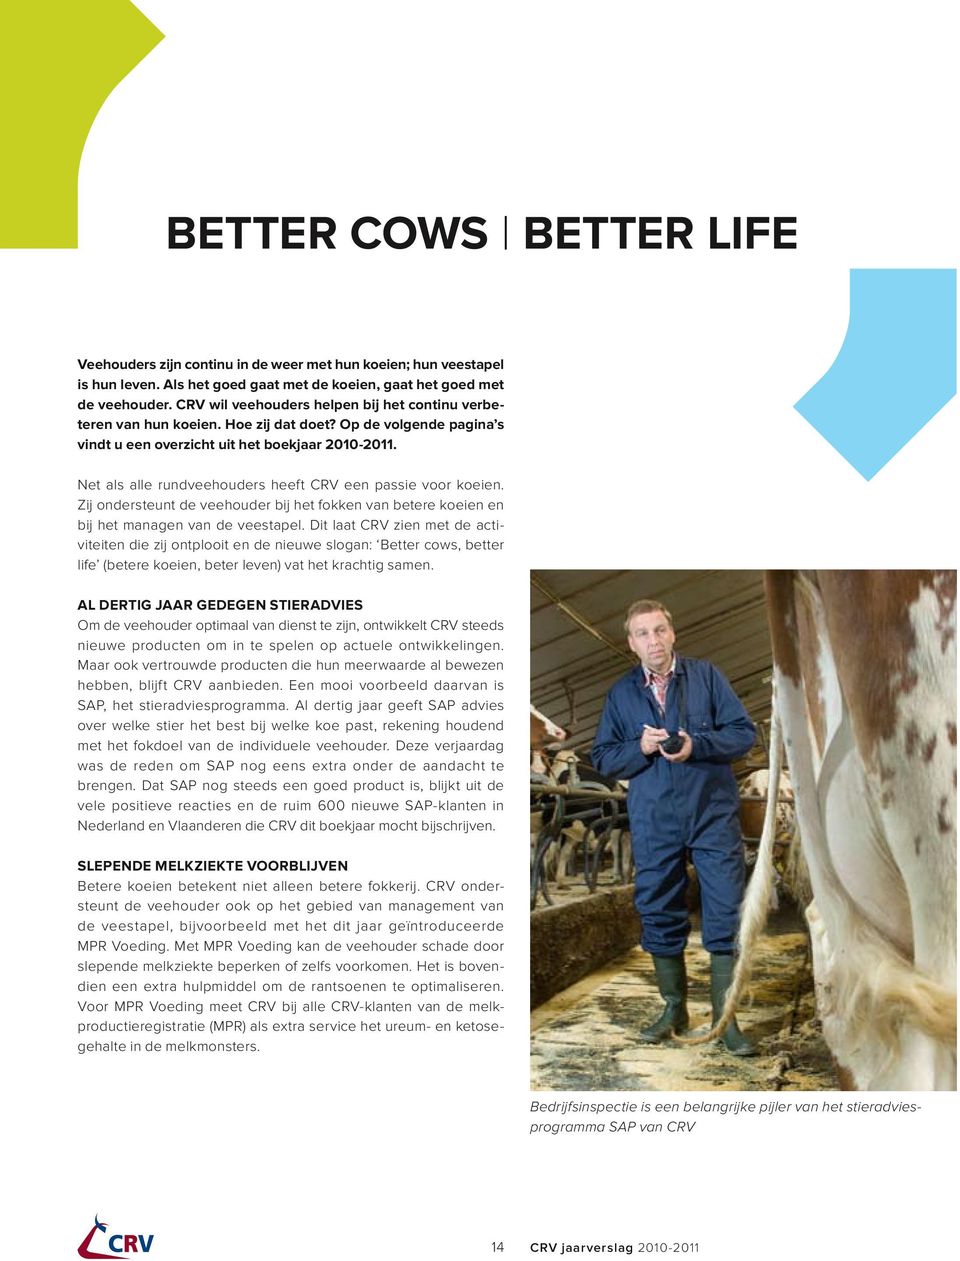 Net als alle rundveehouders heeft CRV een passie voor koeien. Zij ondersteunt de veehouder bij het fokken van betere koeien en bij het managen van de veestapel.